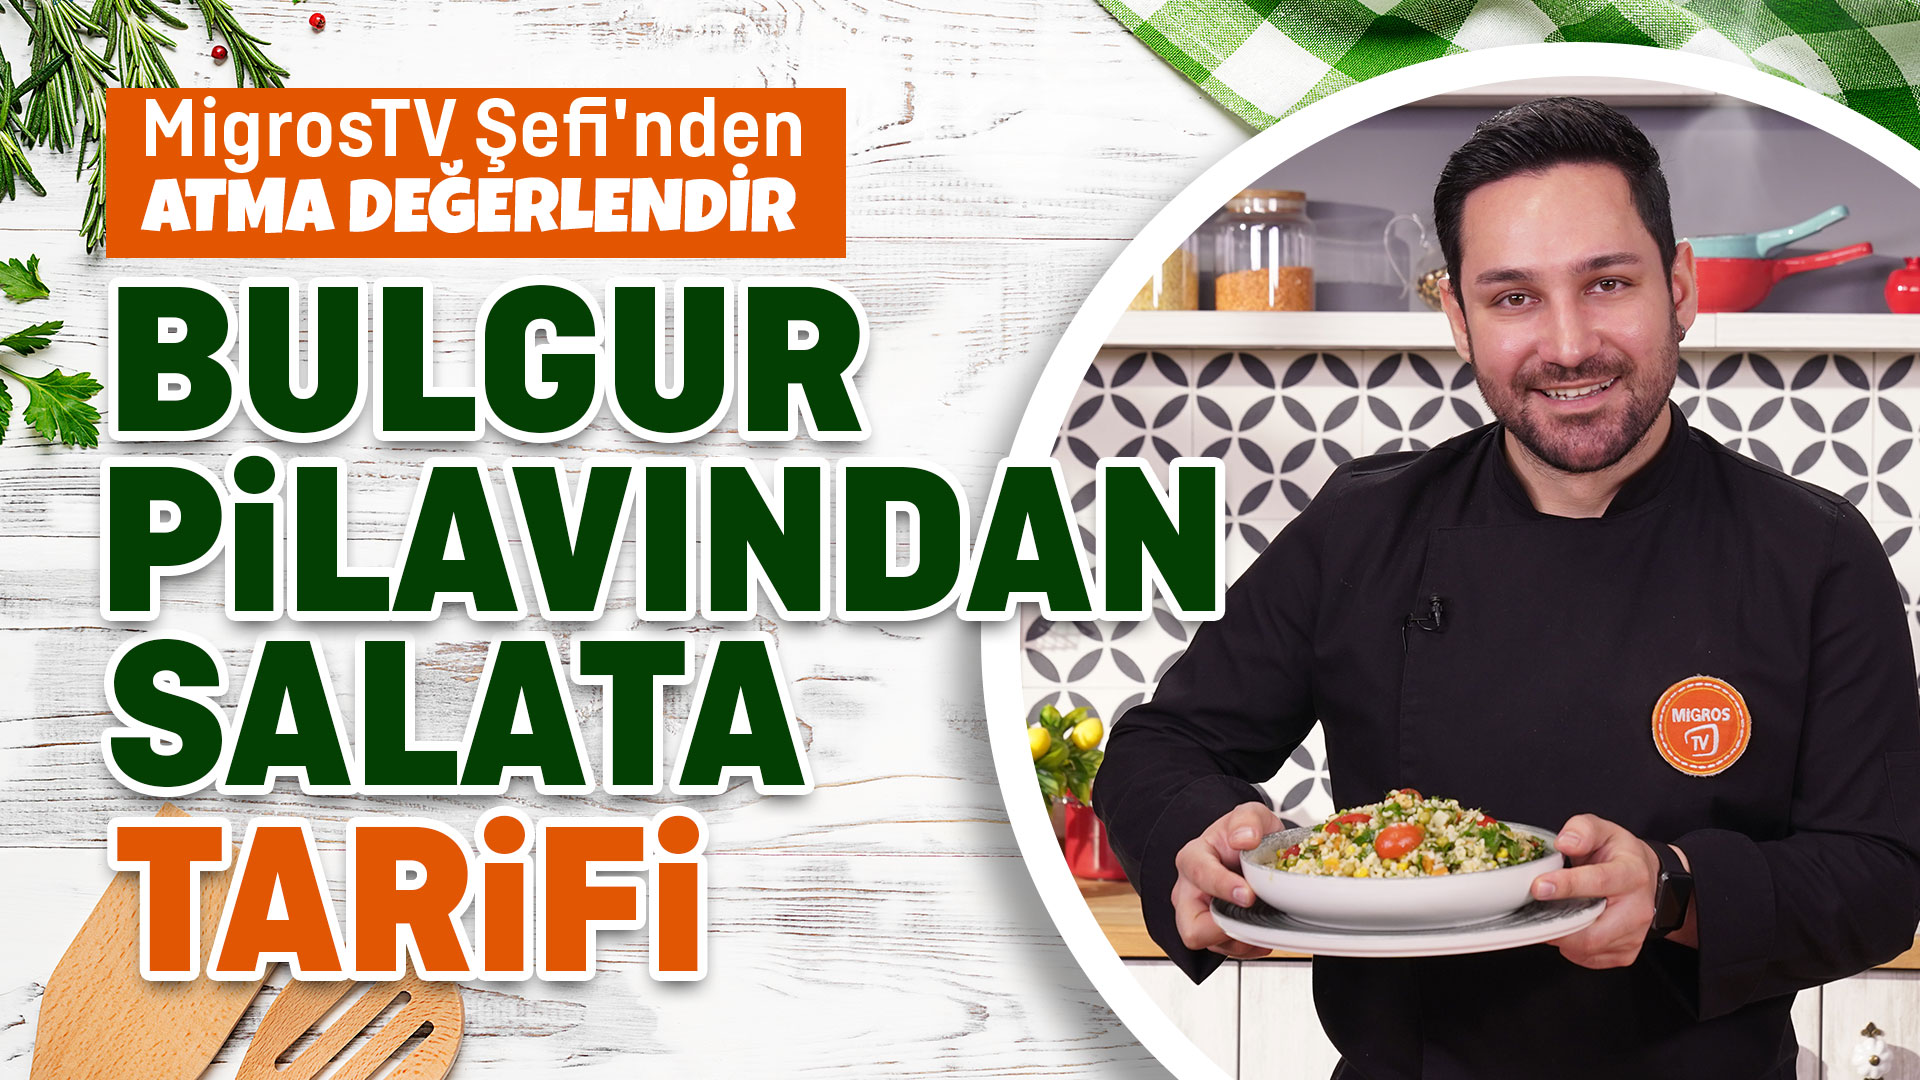 Bulgur Pilavından Salata Tarifi | Atma Değerlendir